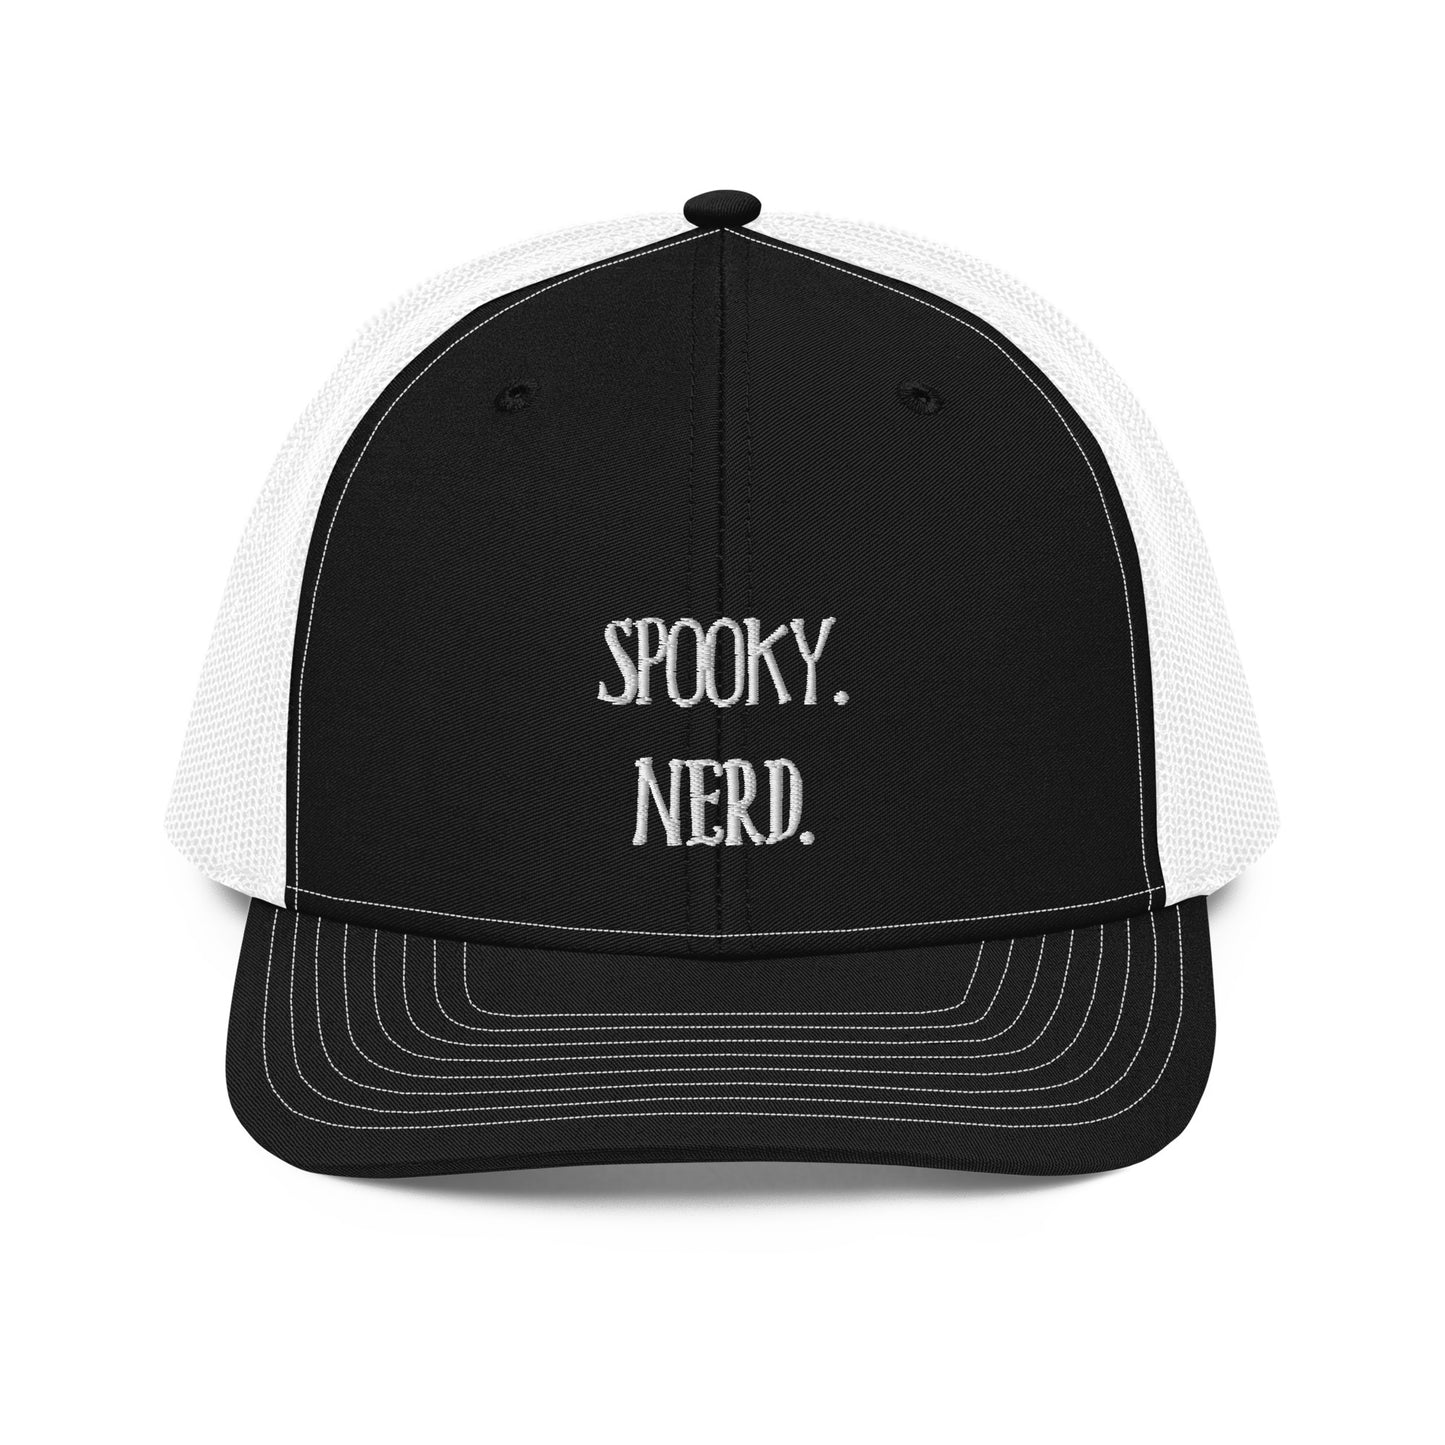 Spooky Nerd Trucker Cap